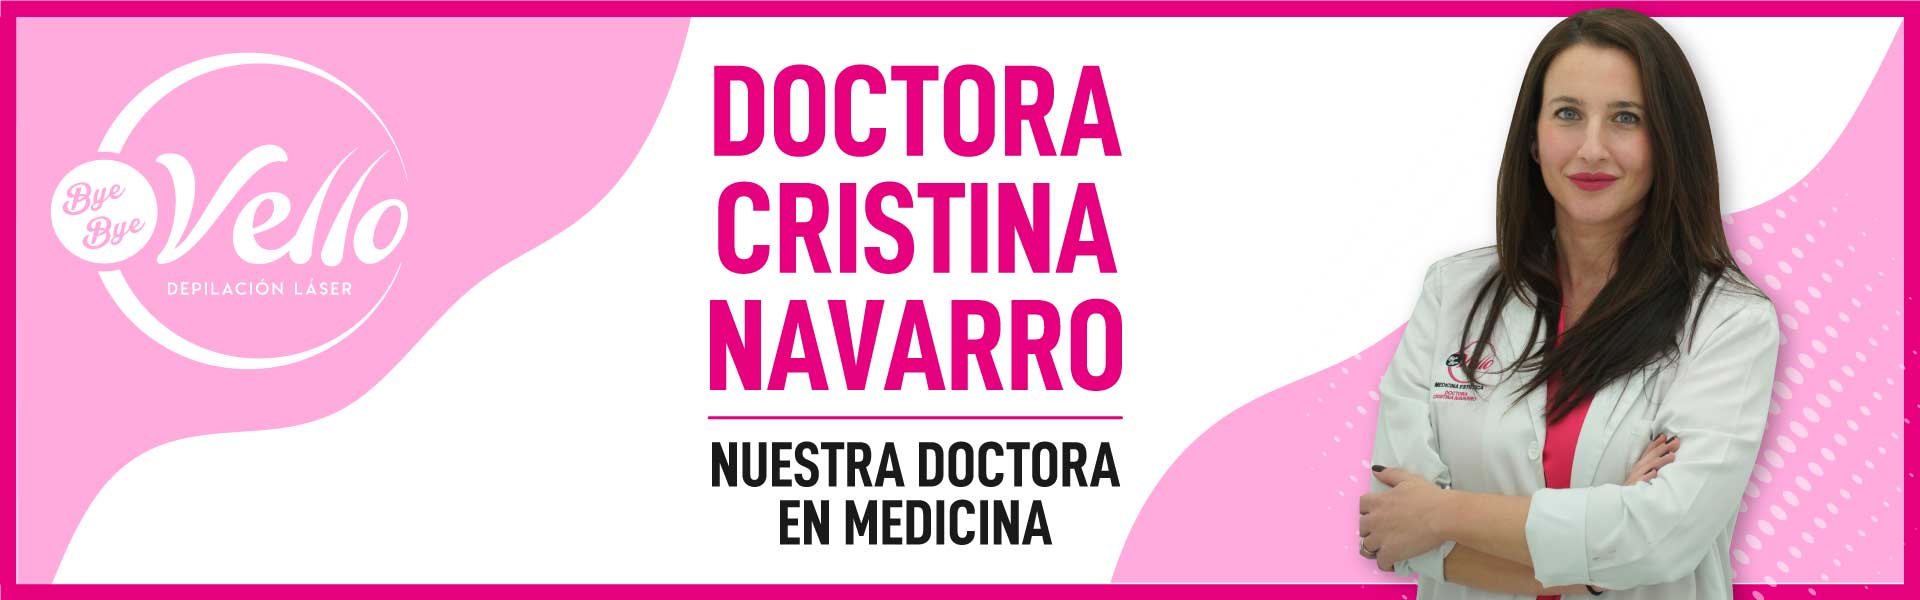 Banner Doctora